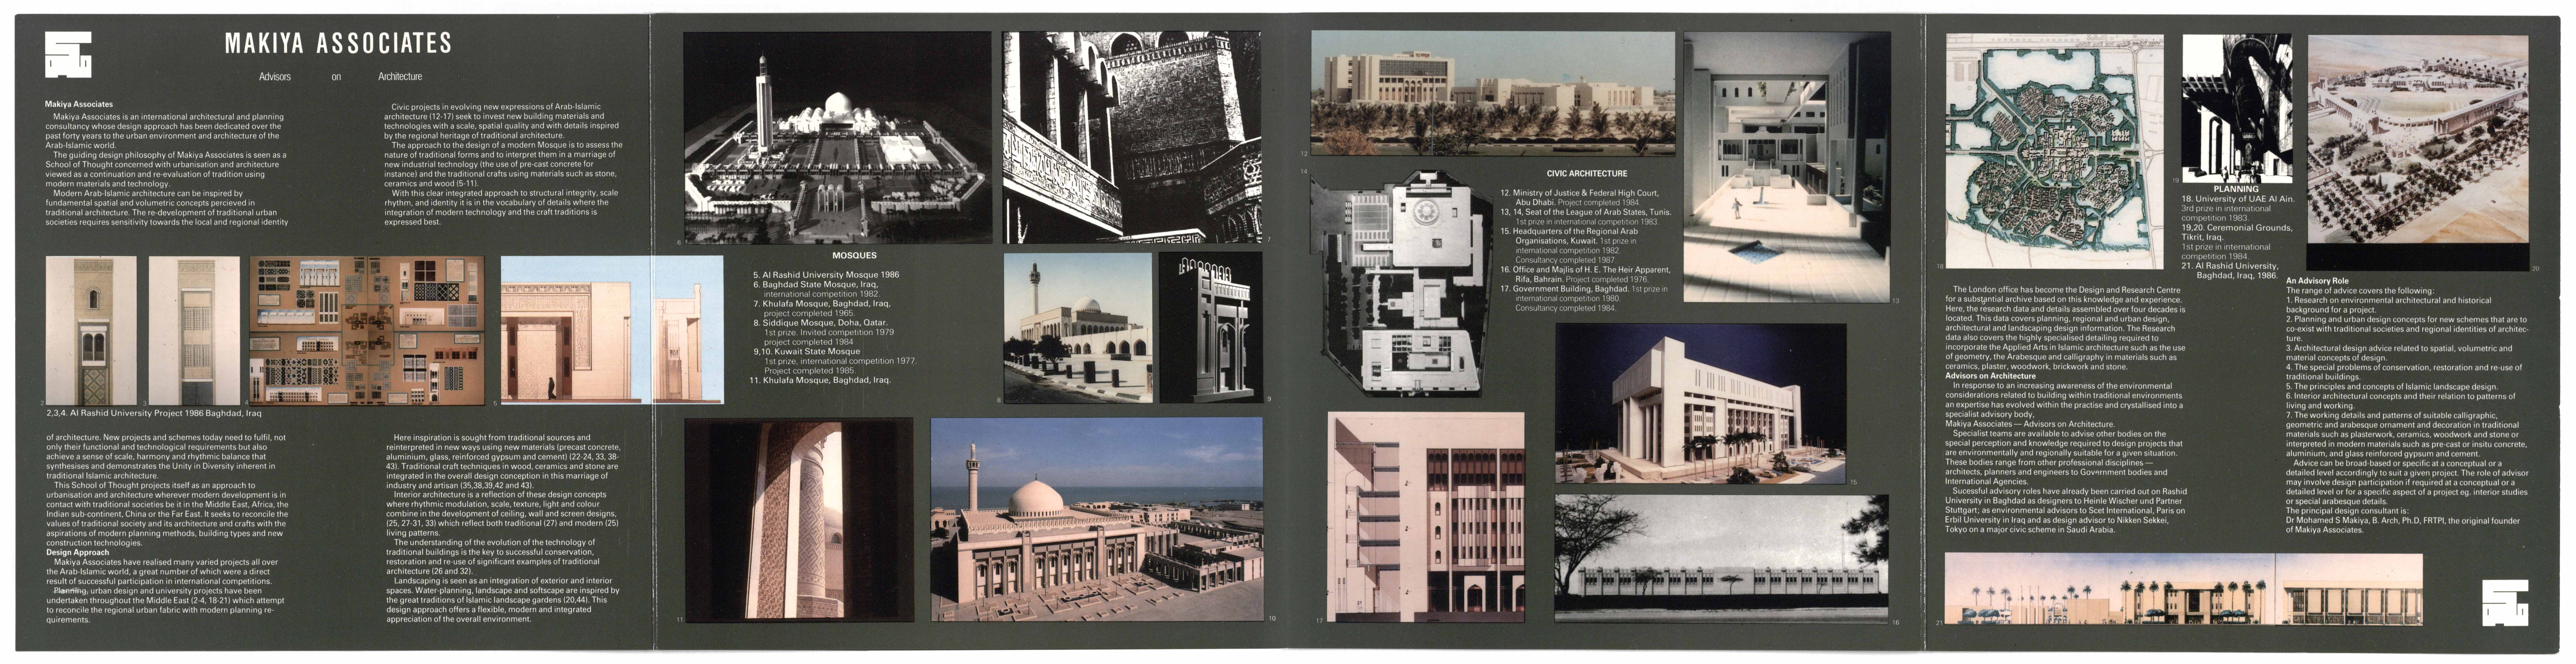 Makiya Associates Advisors on Architecture brochure (full view, side 2 of 2)